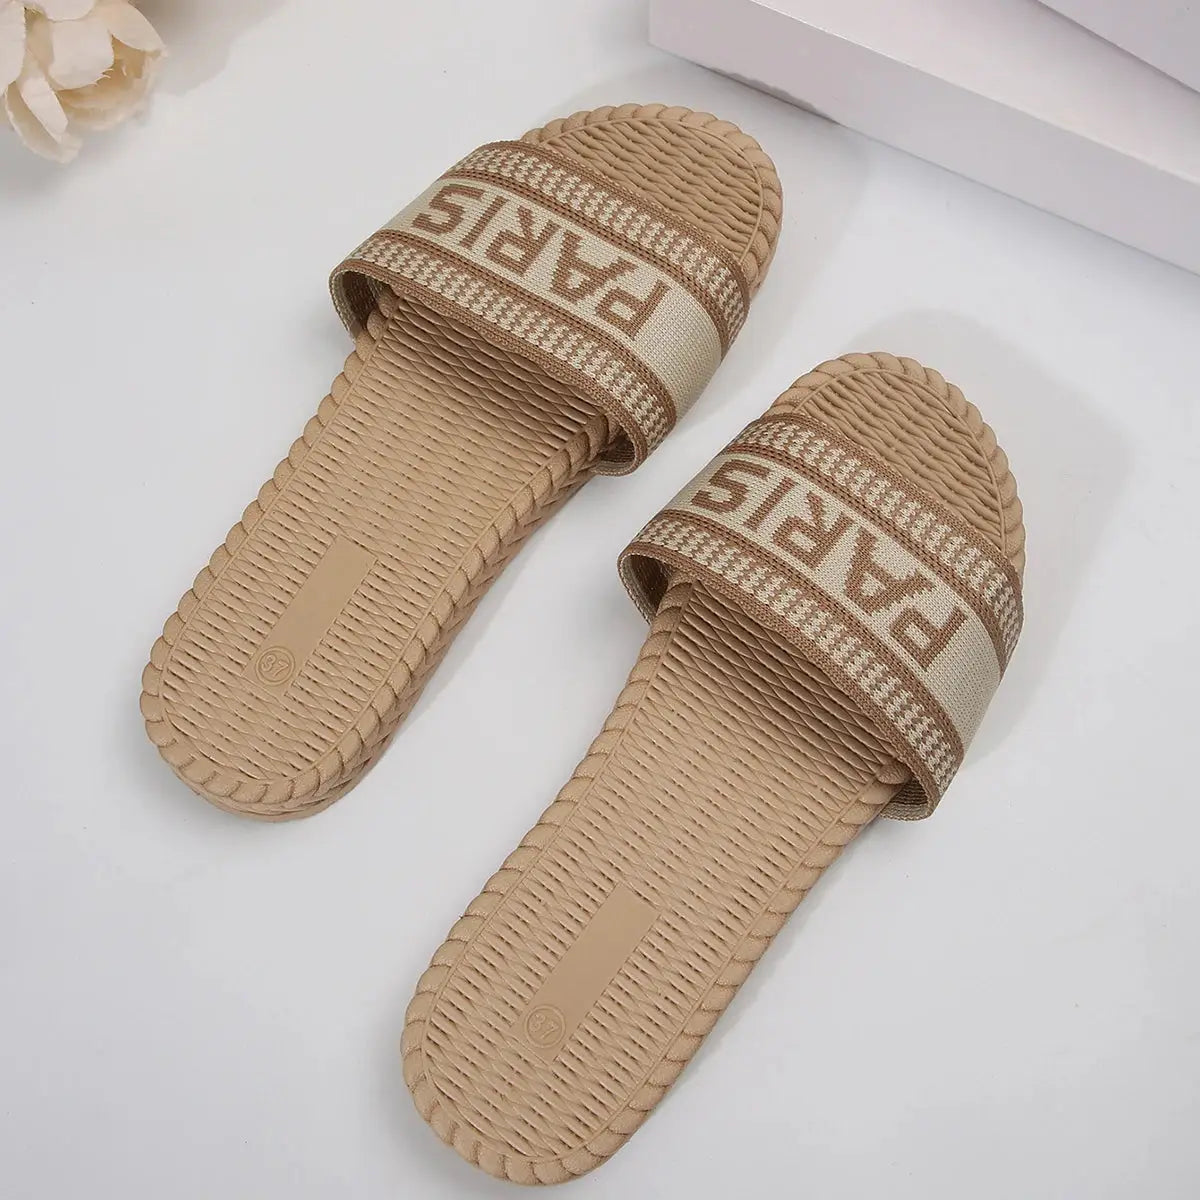 BreezyWalk Comfort Sandals